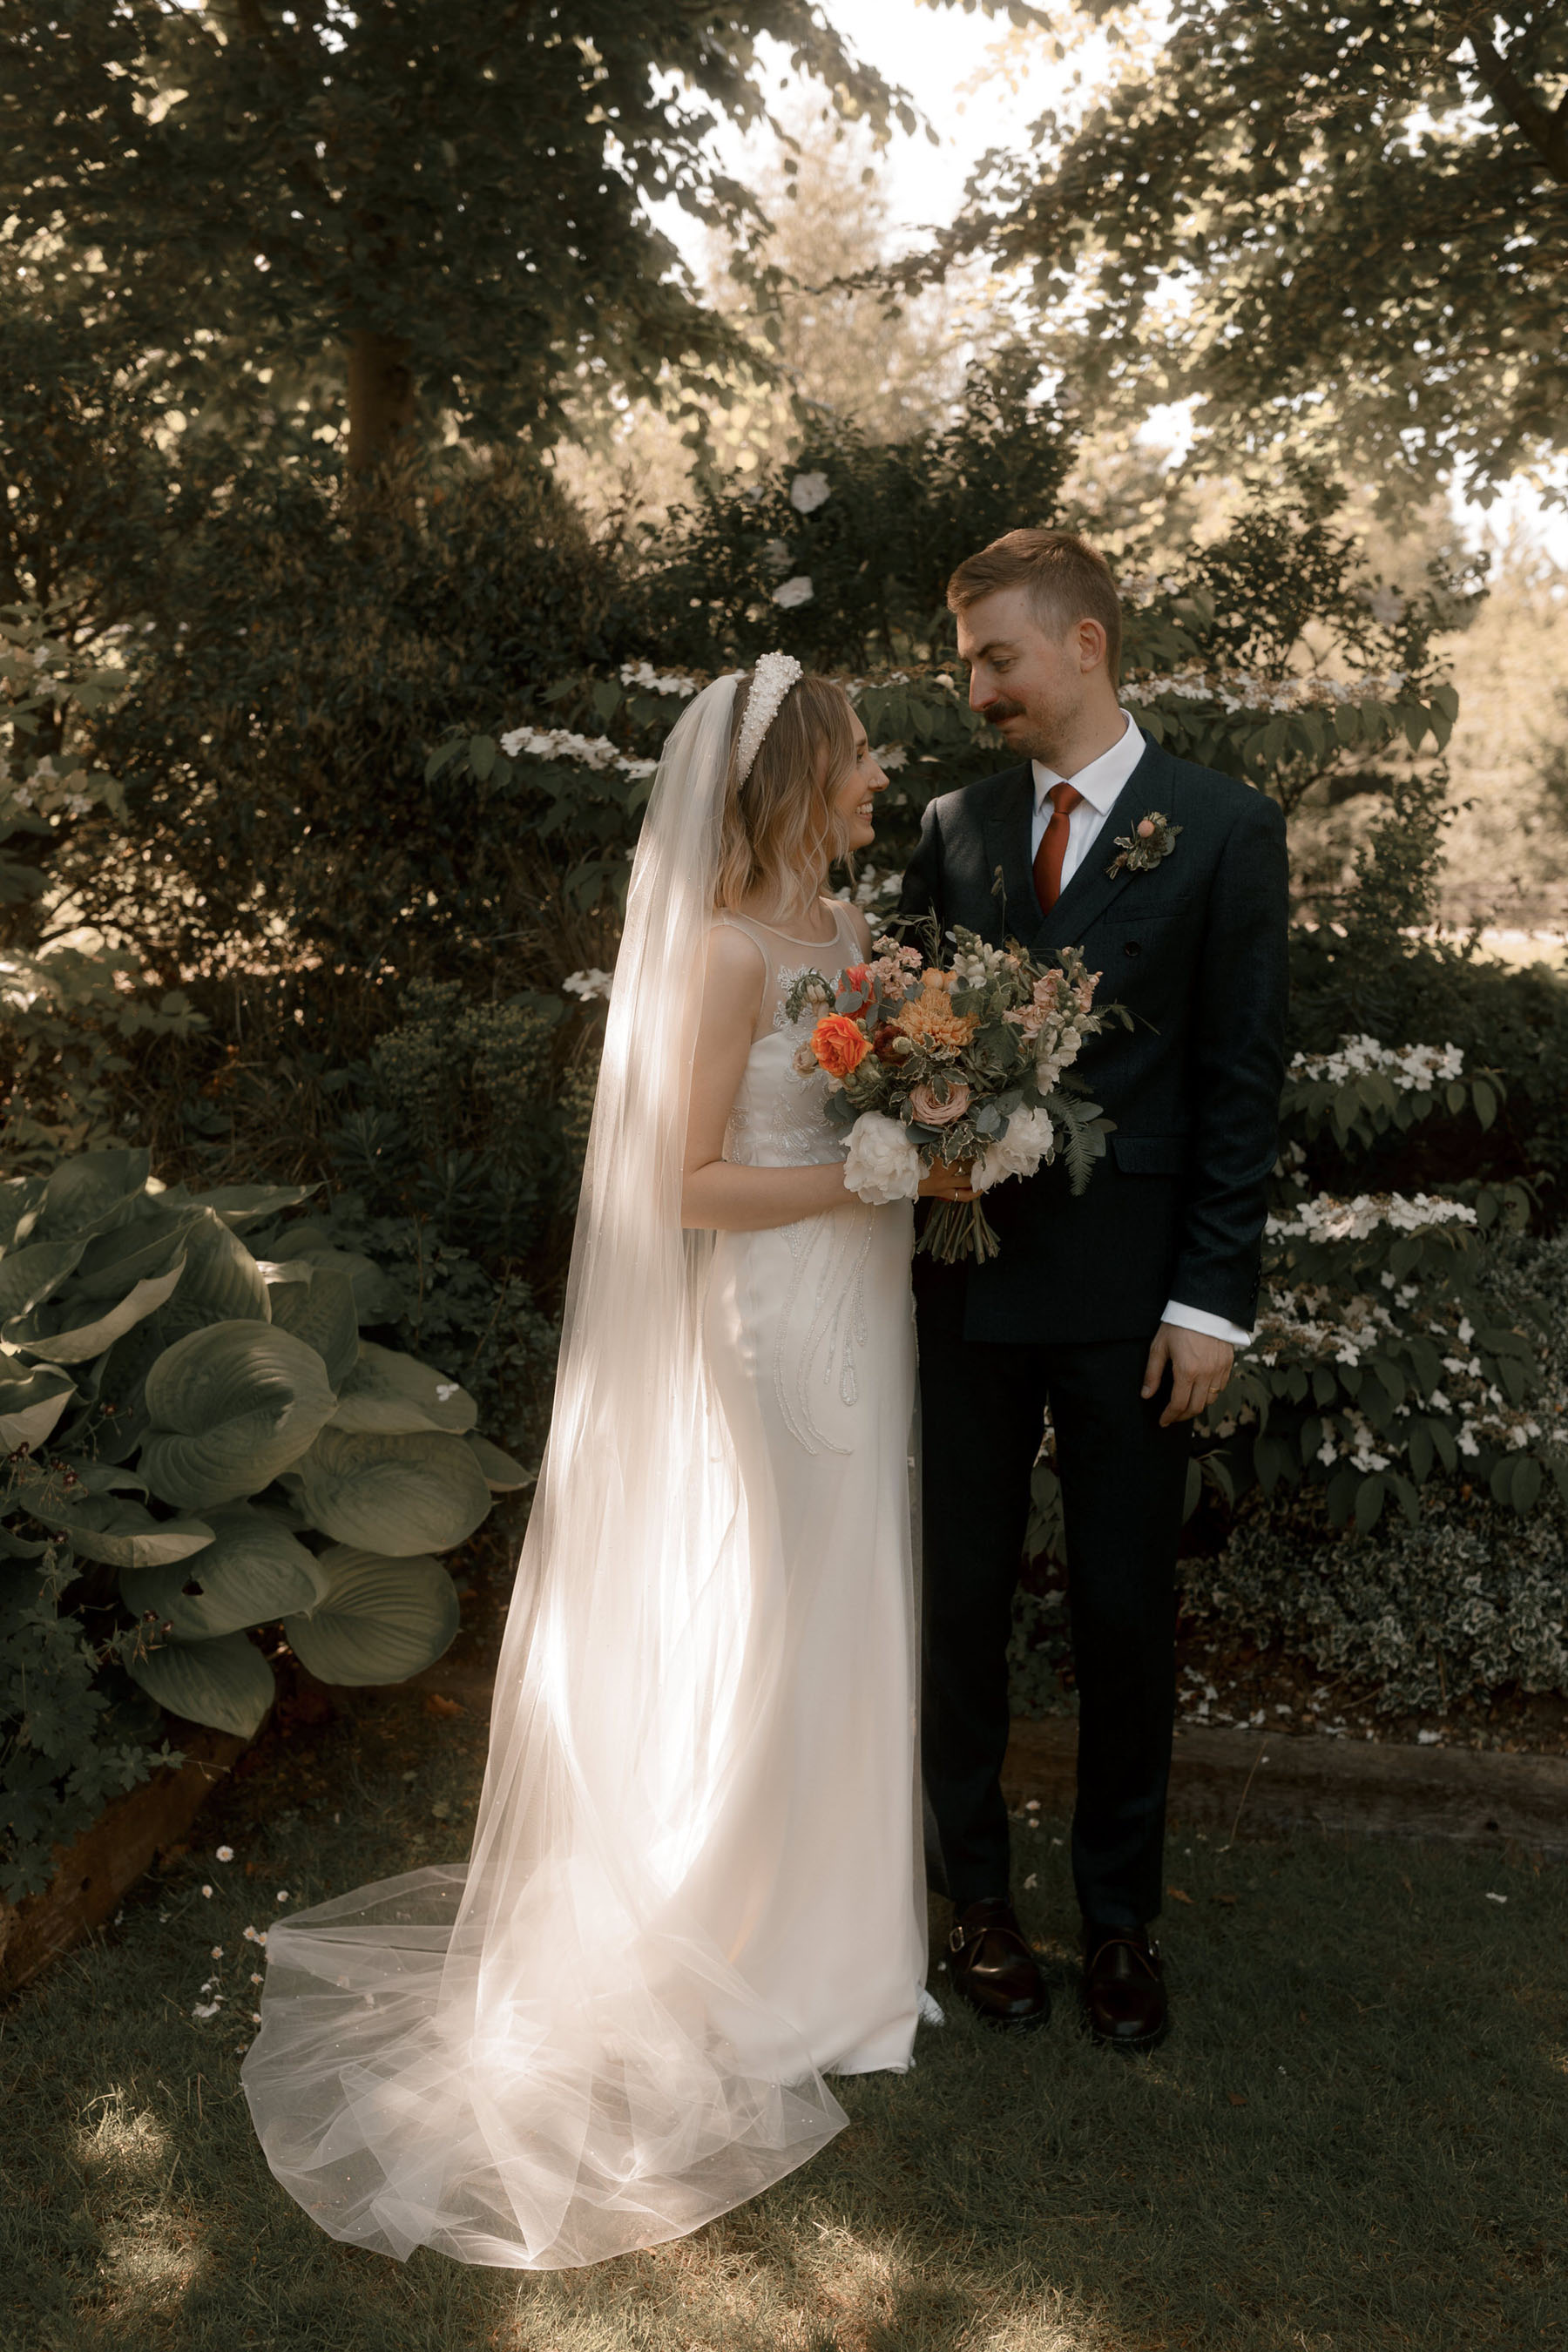 Bride in David Fielden wedding dress, pearl headband and orange bouquet. Groom in dark suit & tie.